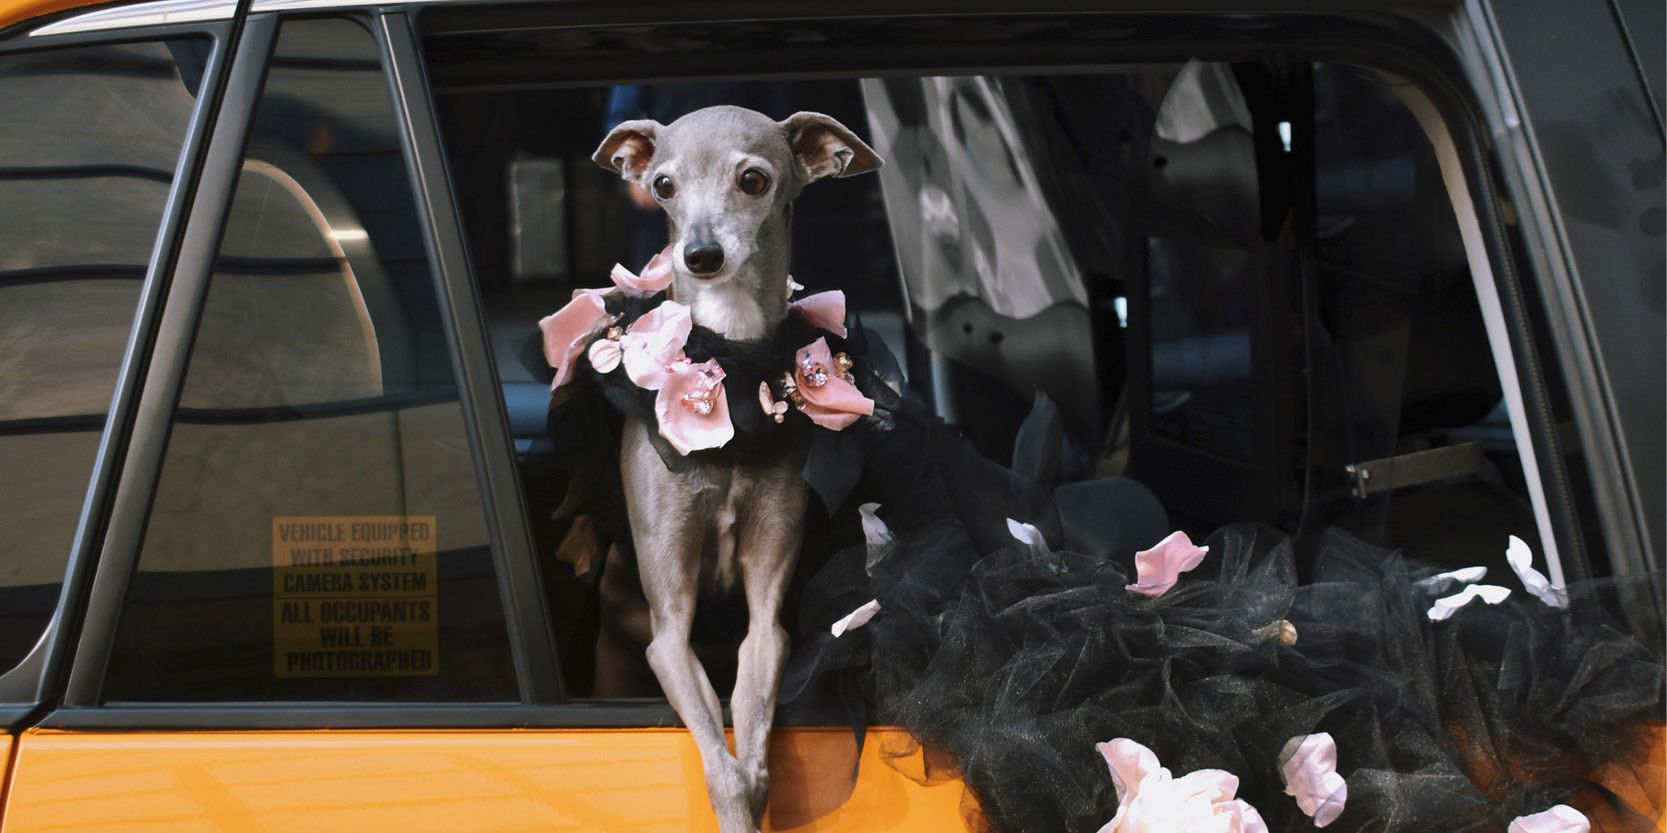 Overeenkomstig vervoer Individualiteit 24 uur met Tika the Iggy, 's werelds bekendste social media hond